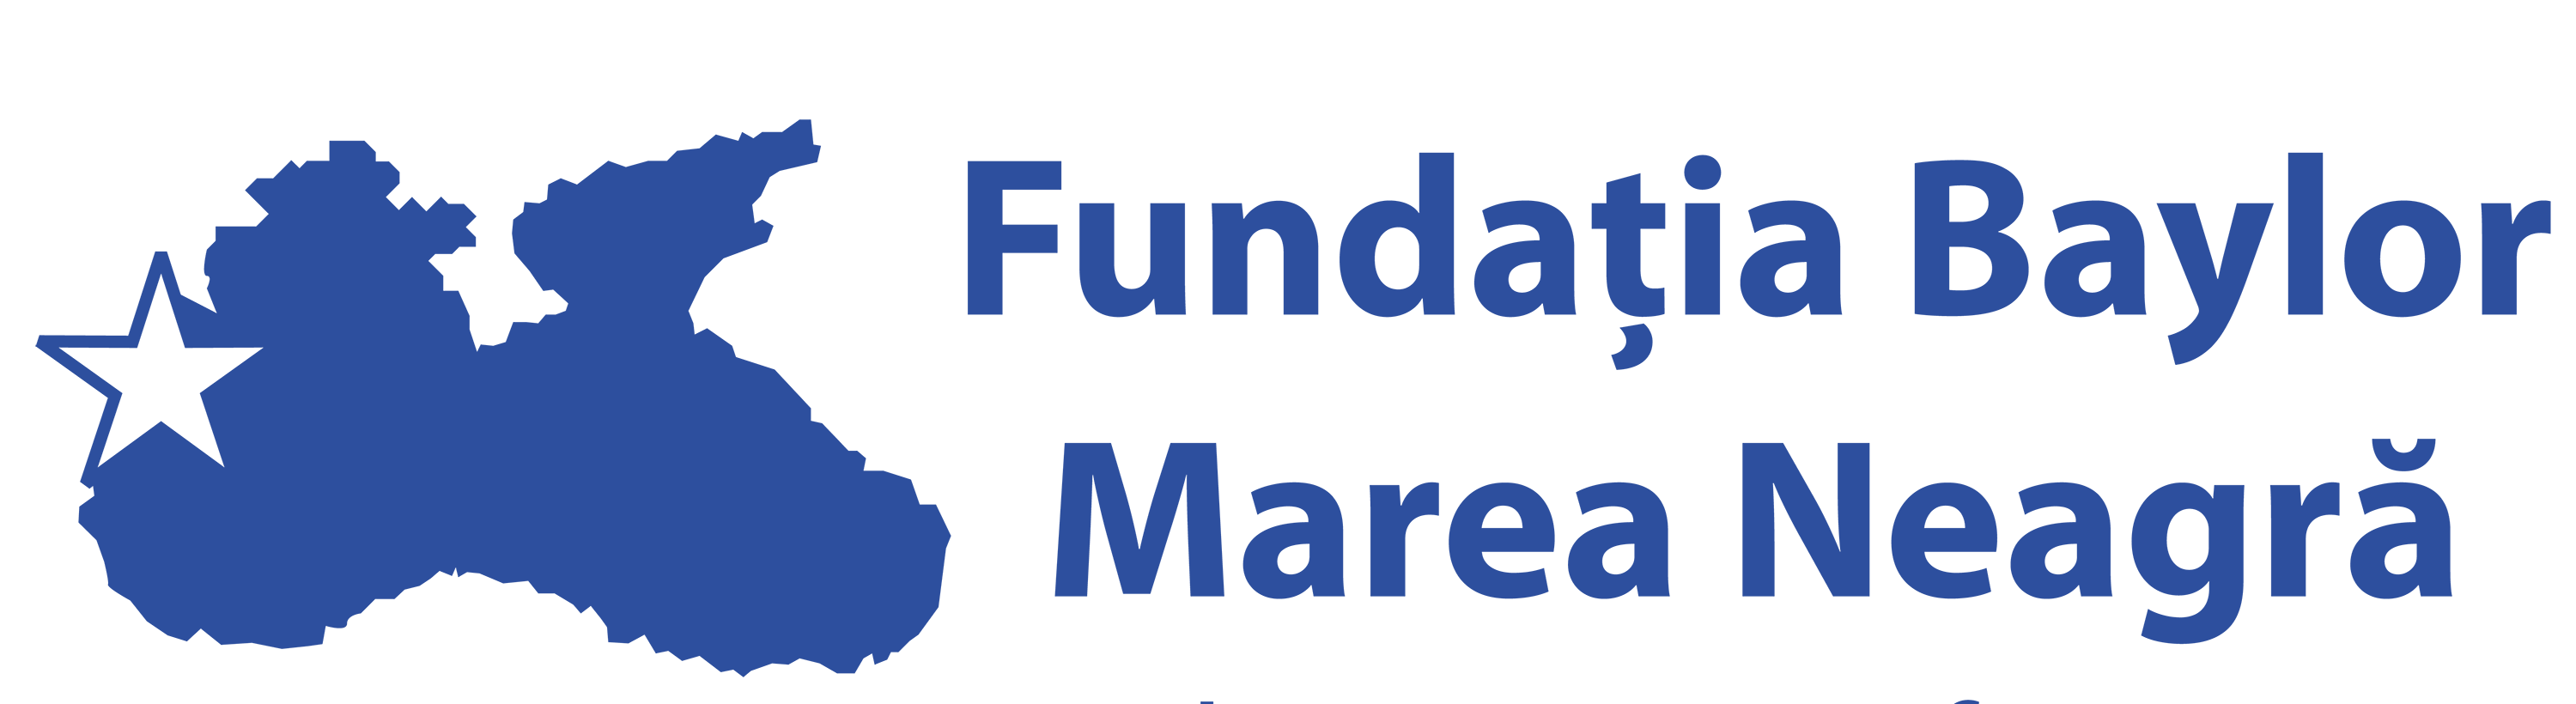 Fundaţia Baylor Marea Neagră logo